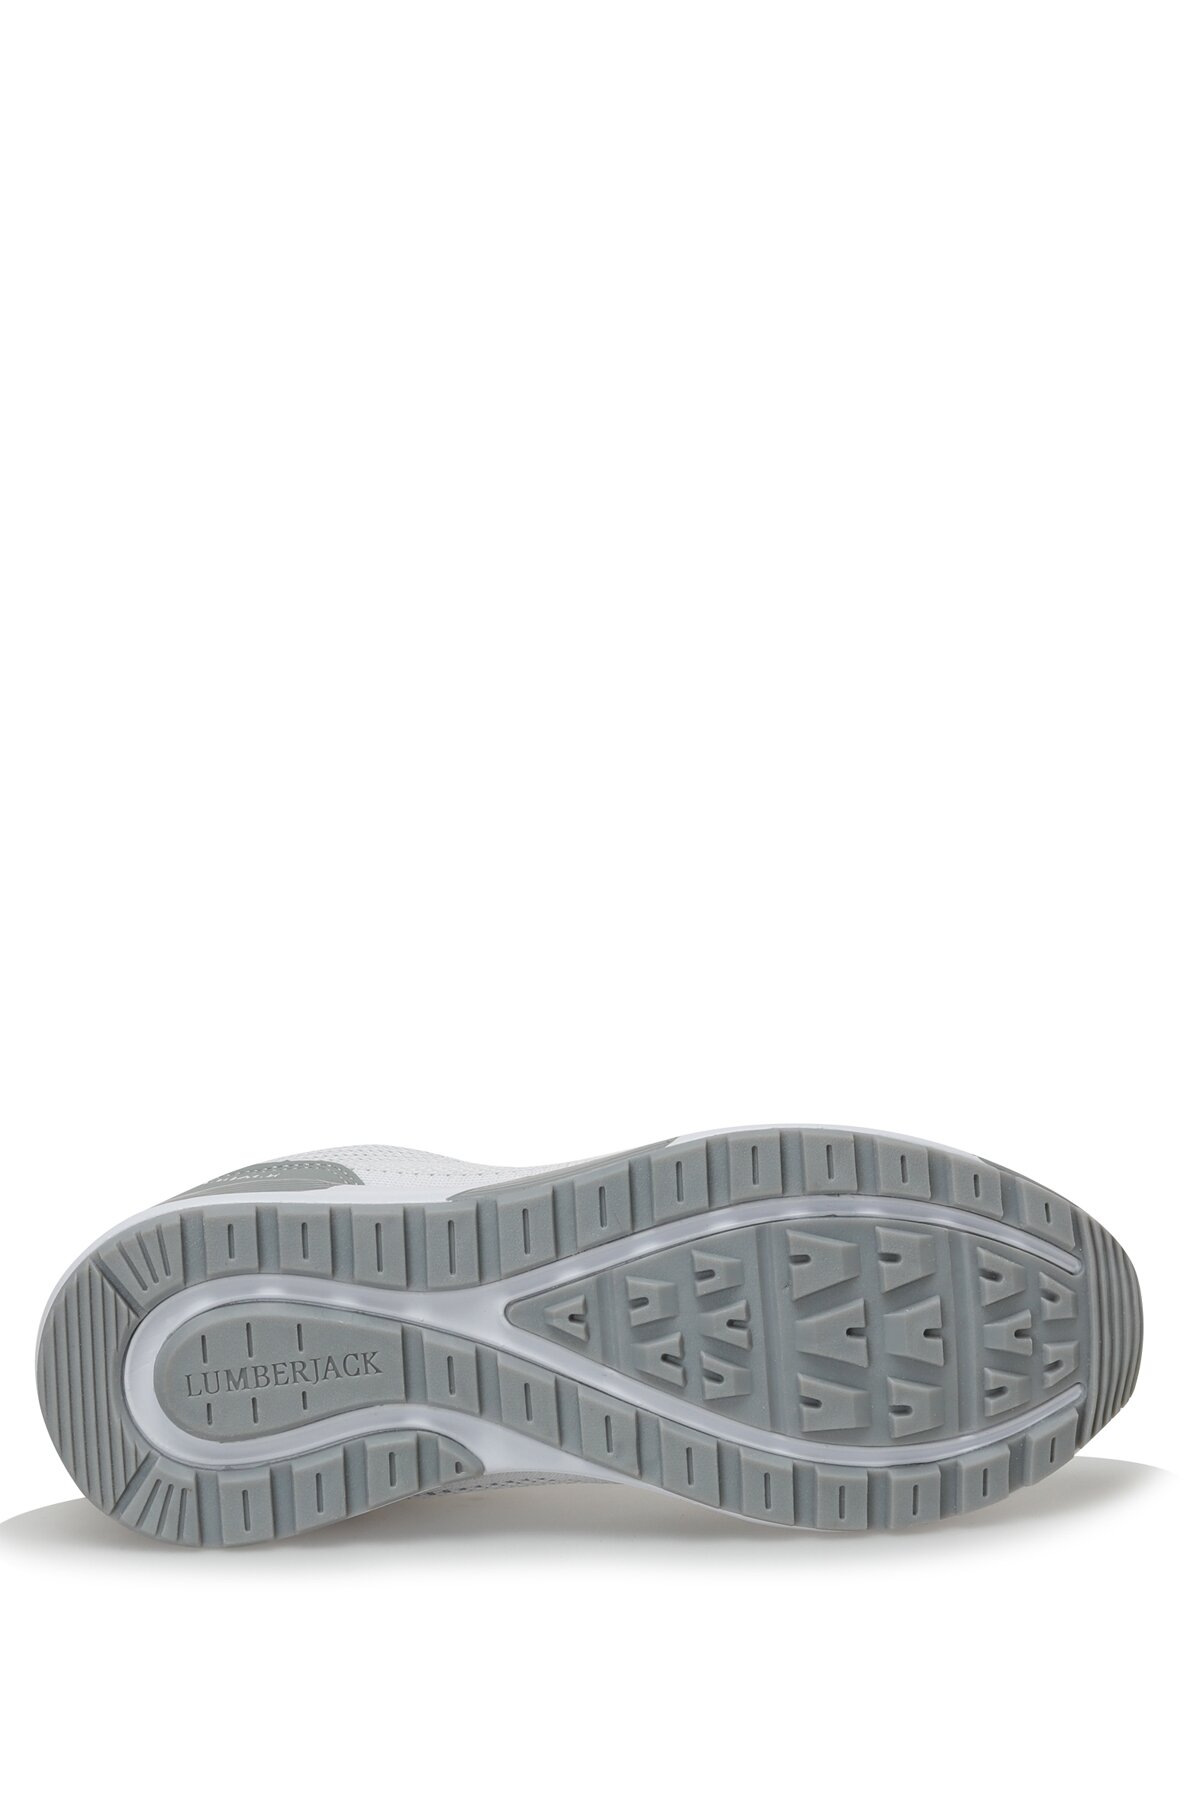 کفش اسپورت مردانه لامبرجک مدل Vendor رنگ سفید